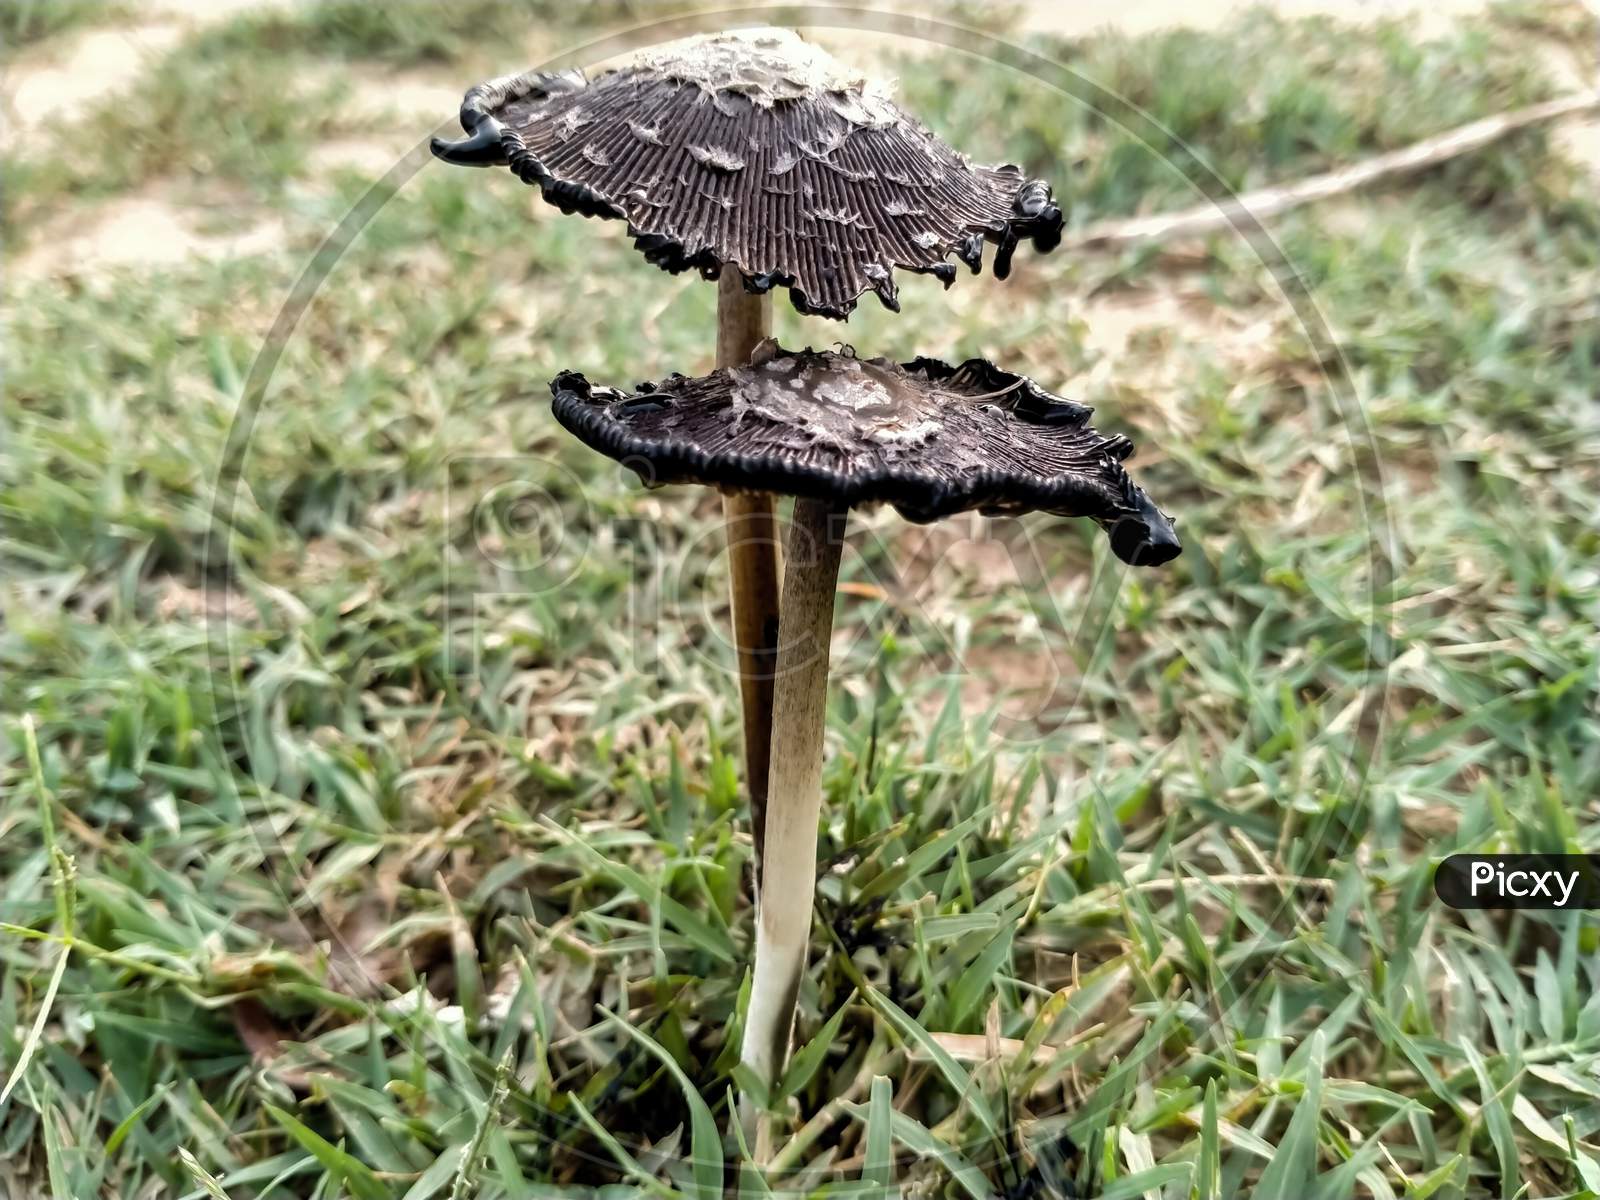 Black mushroom